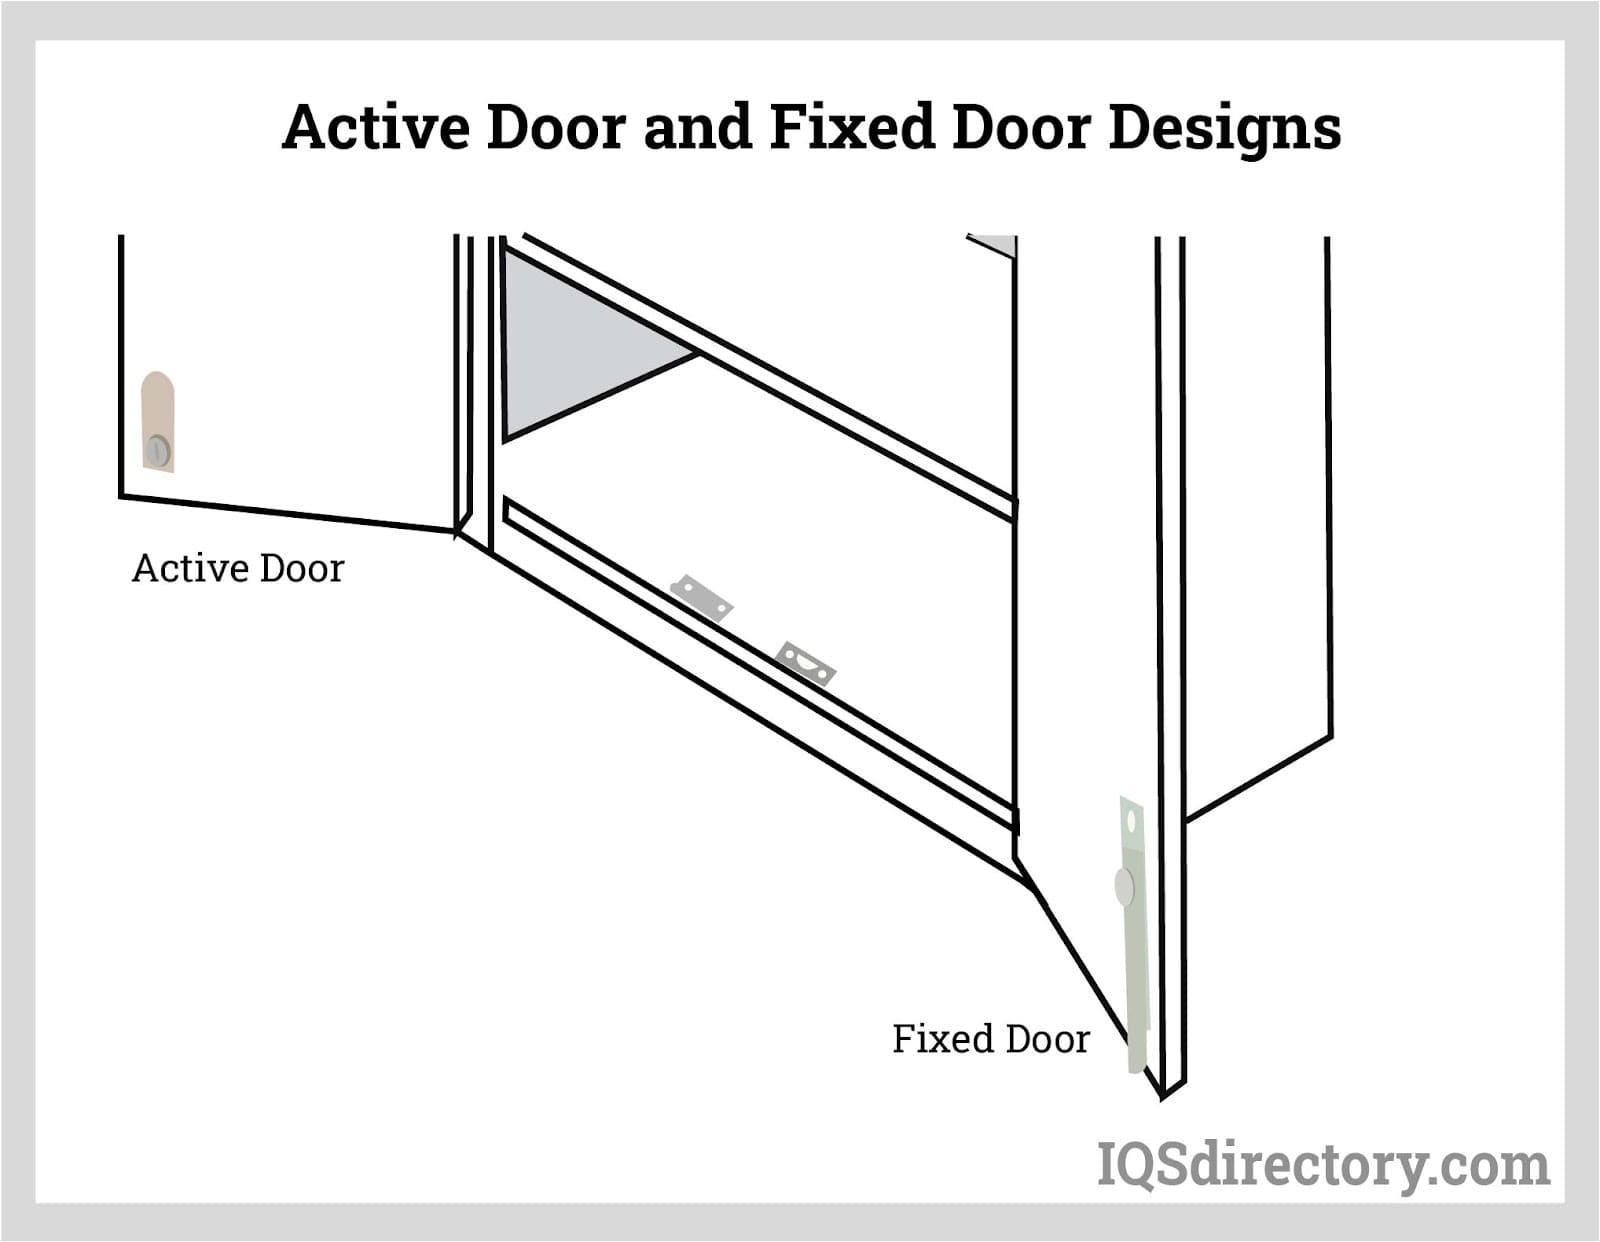 Active Door and Fixed Door Designs